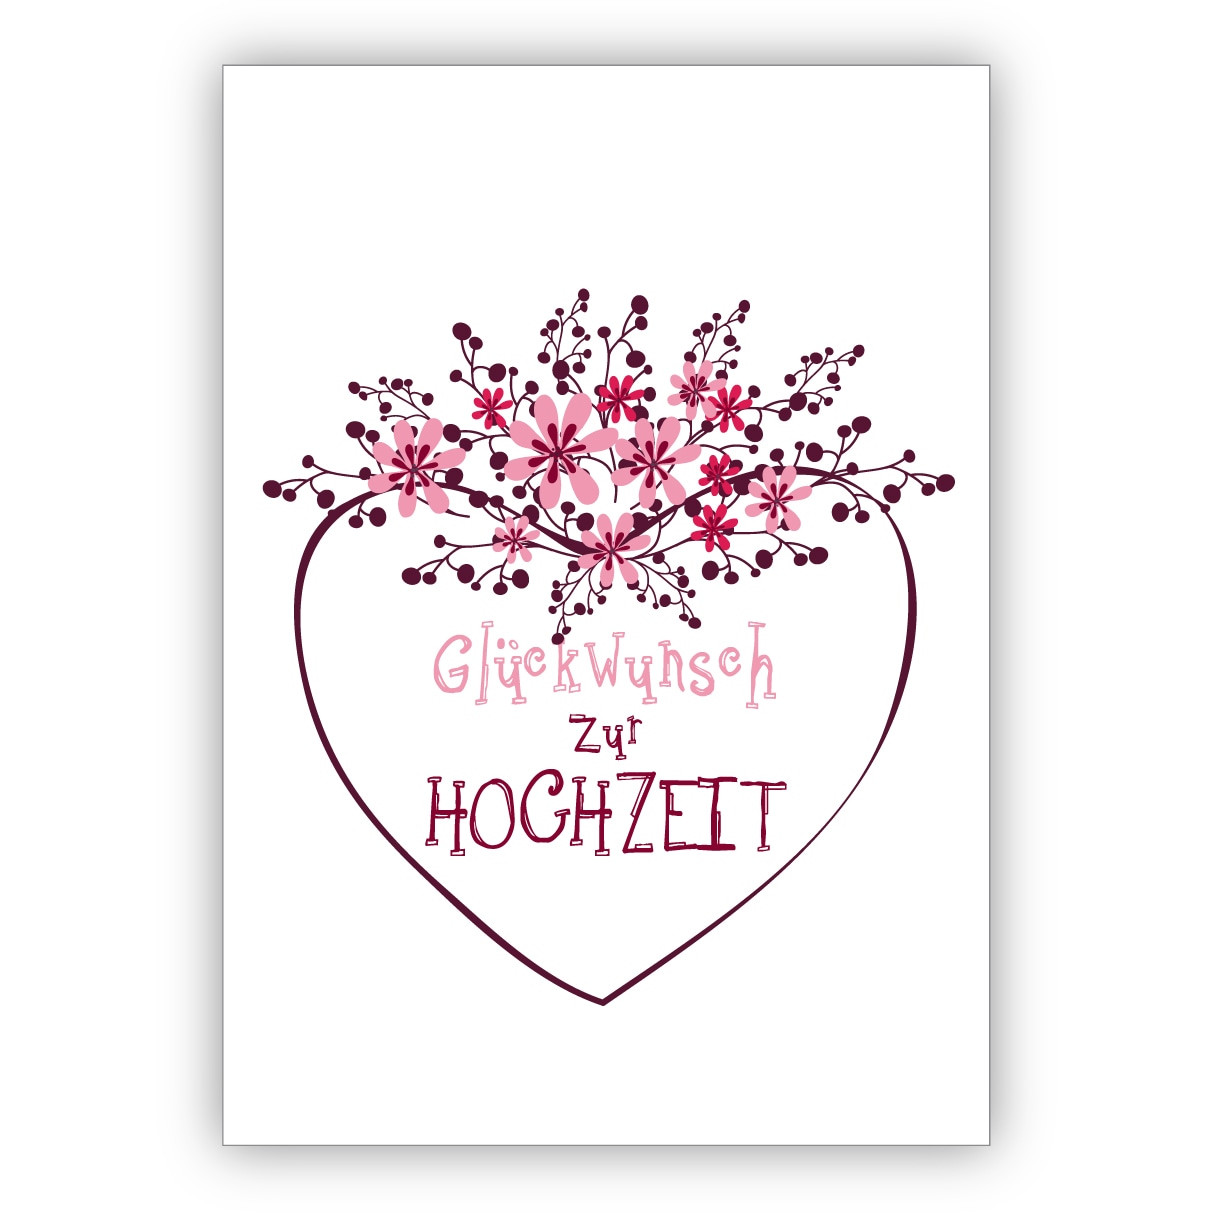 Gratulation Zur Hochzeit Karte
 Wunderschöne Hochzeitskarte mit Blümchen und Herz